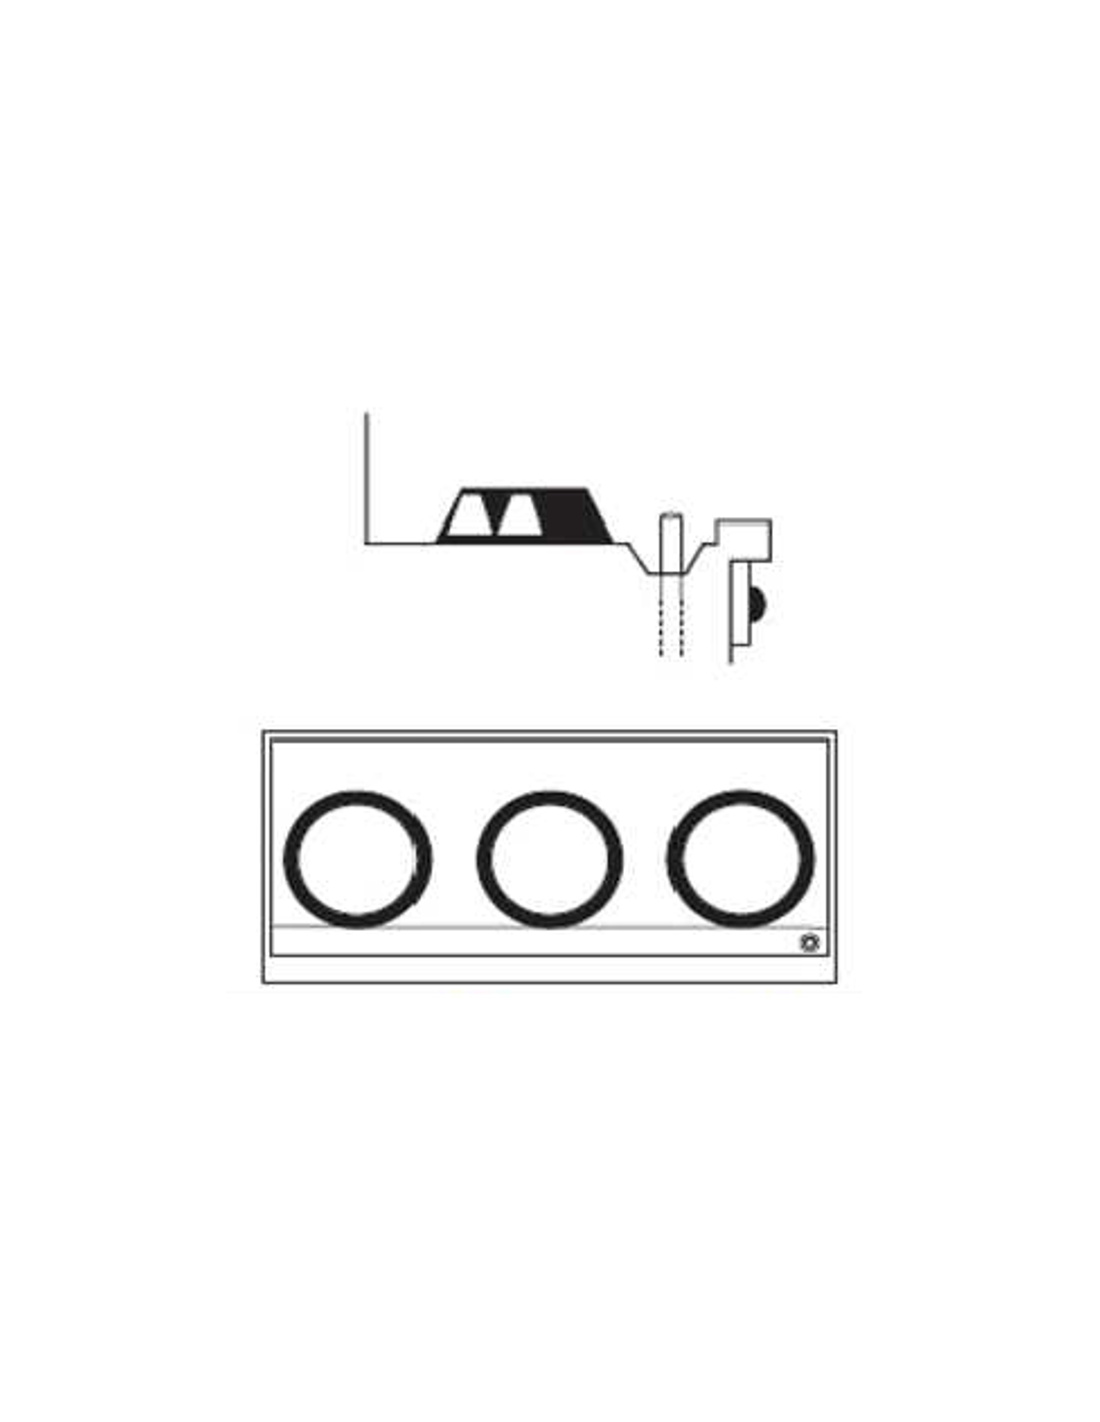 -Canale posteriore con scarico senza sistema di lavaggio del piano ( senza getti d'acqua)